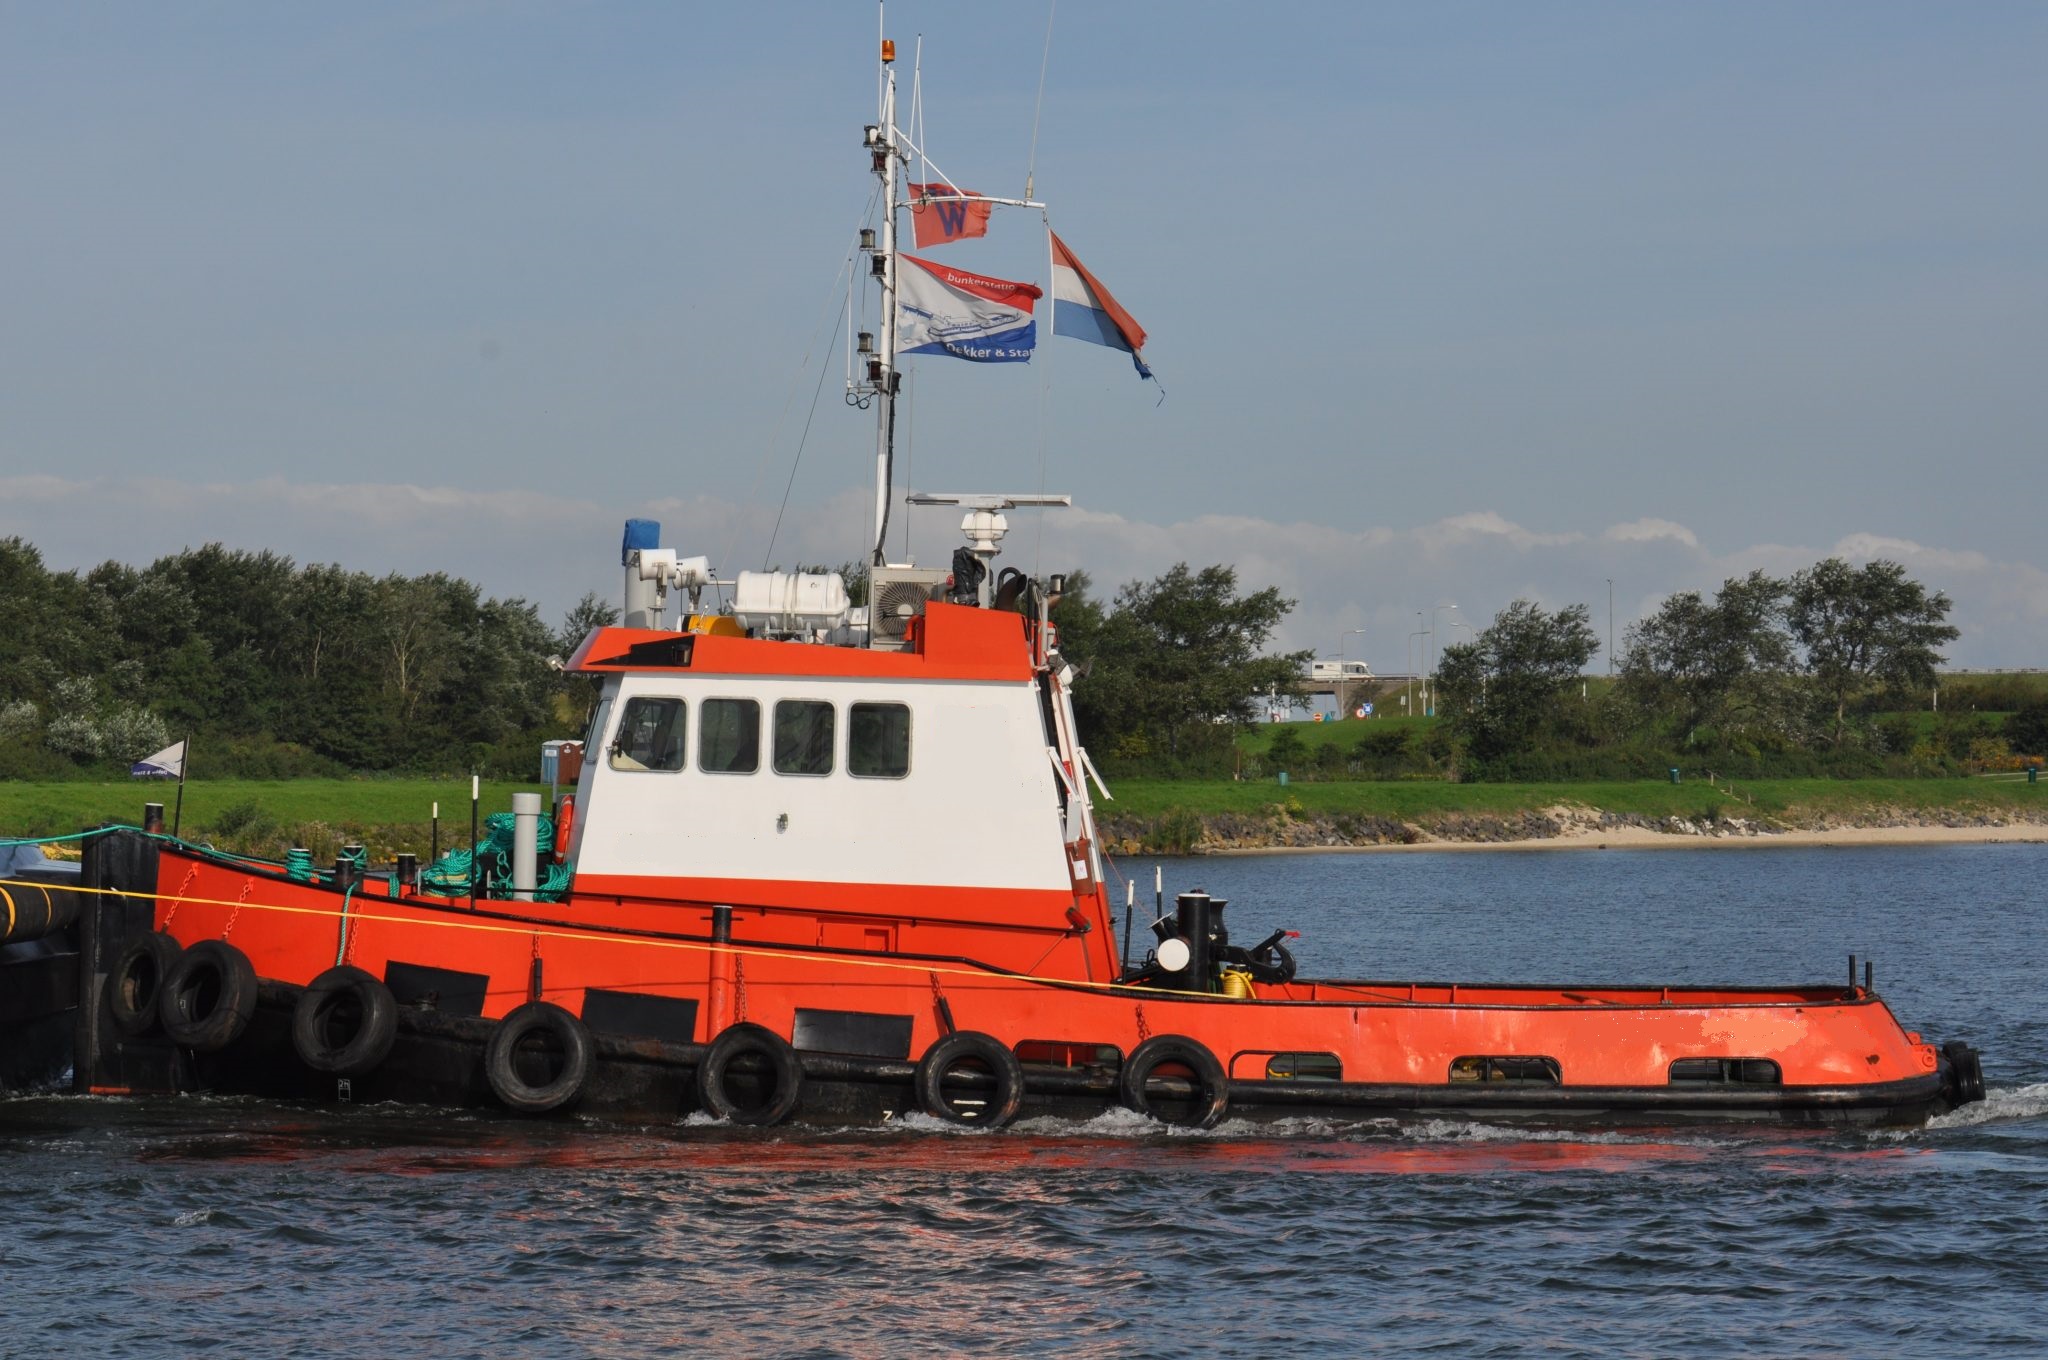 Twin screw heavy duty workboat, 10 tons bollard pull